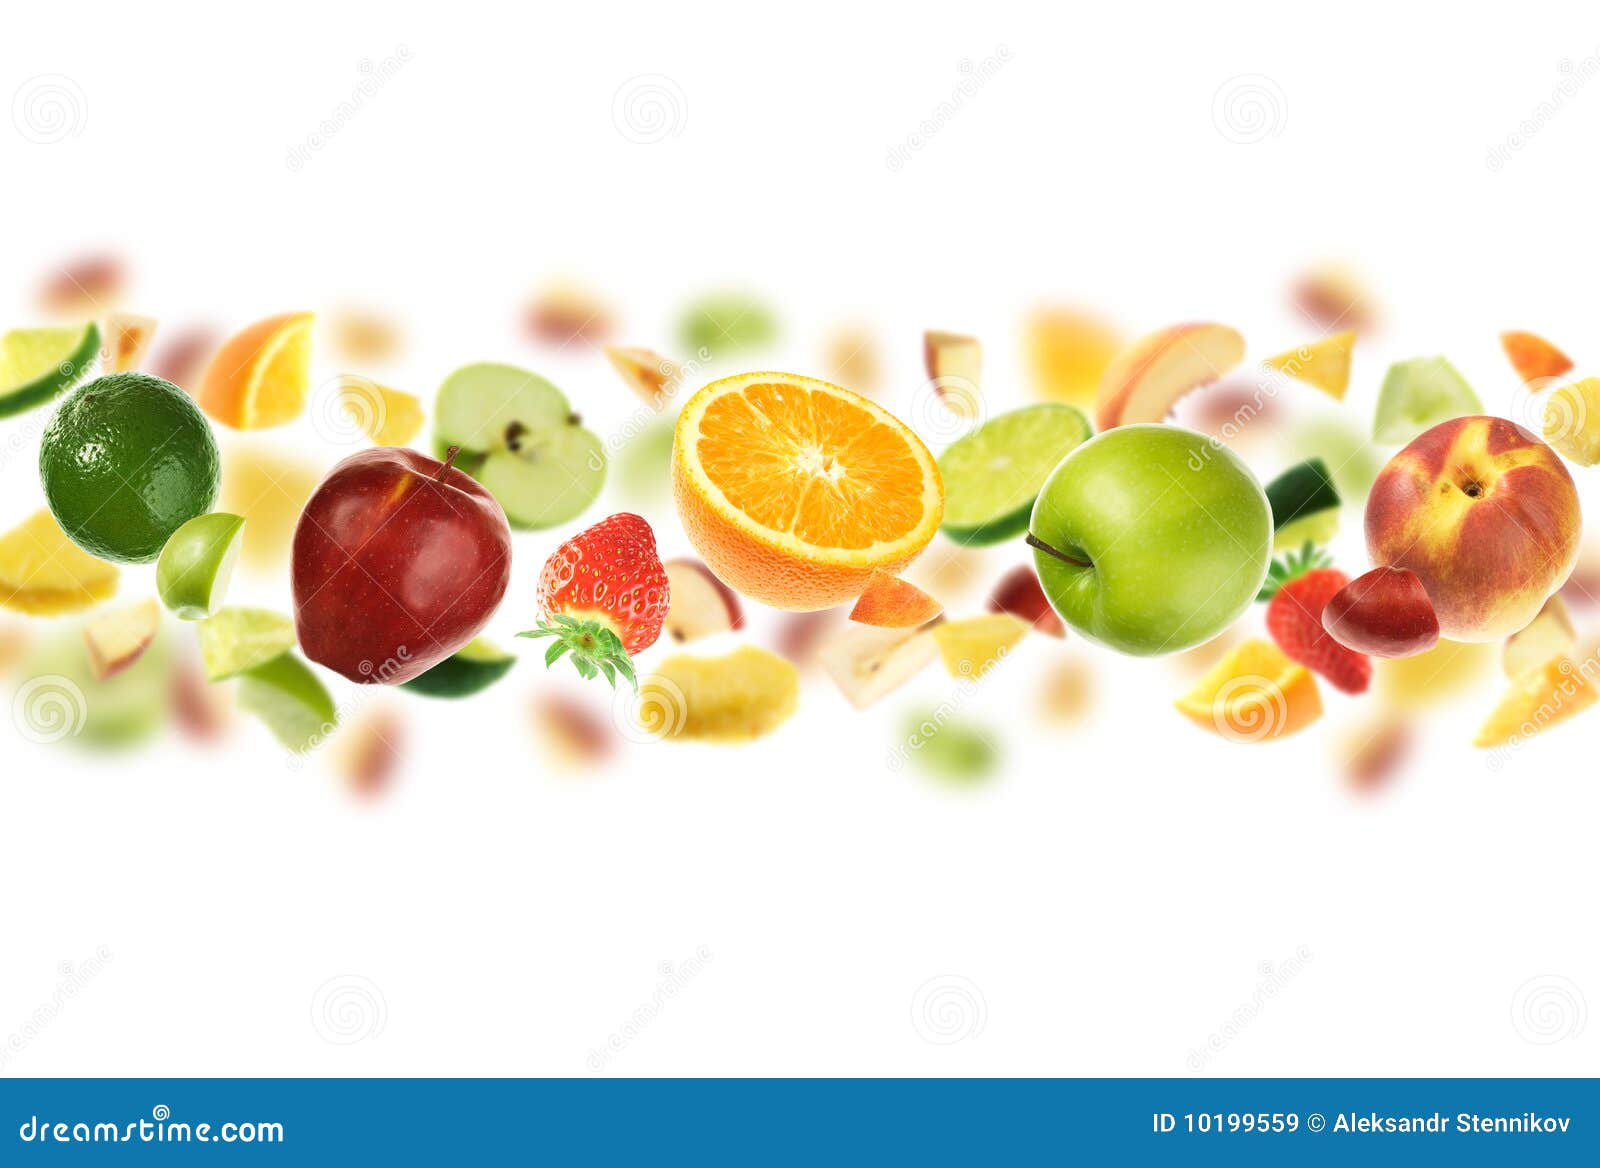 plenty of fruits